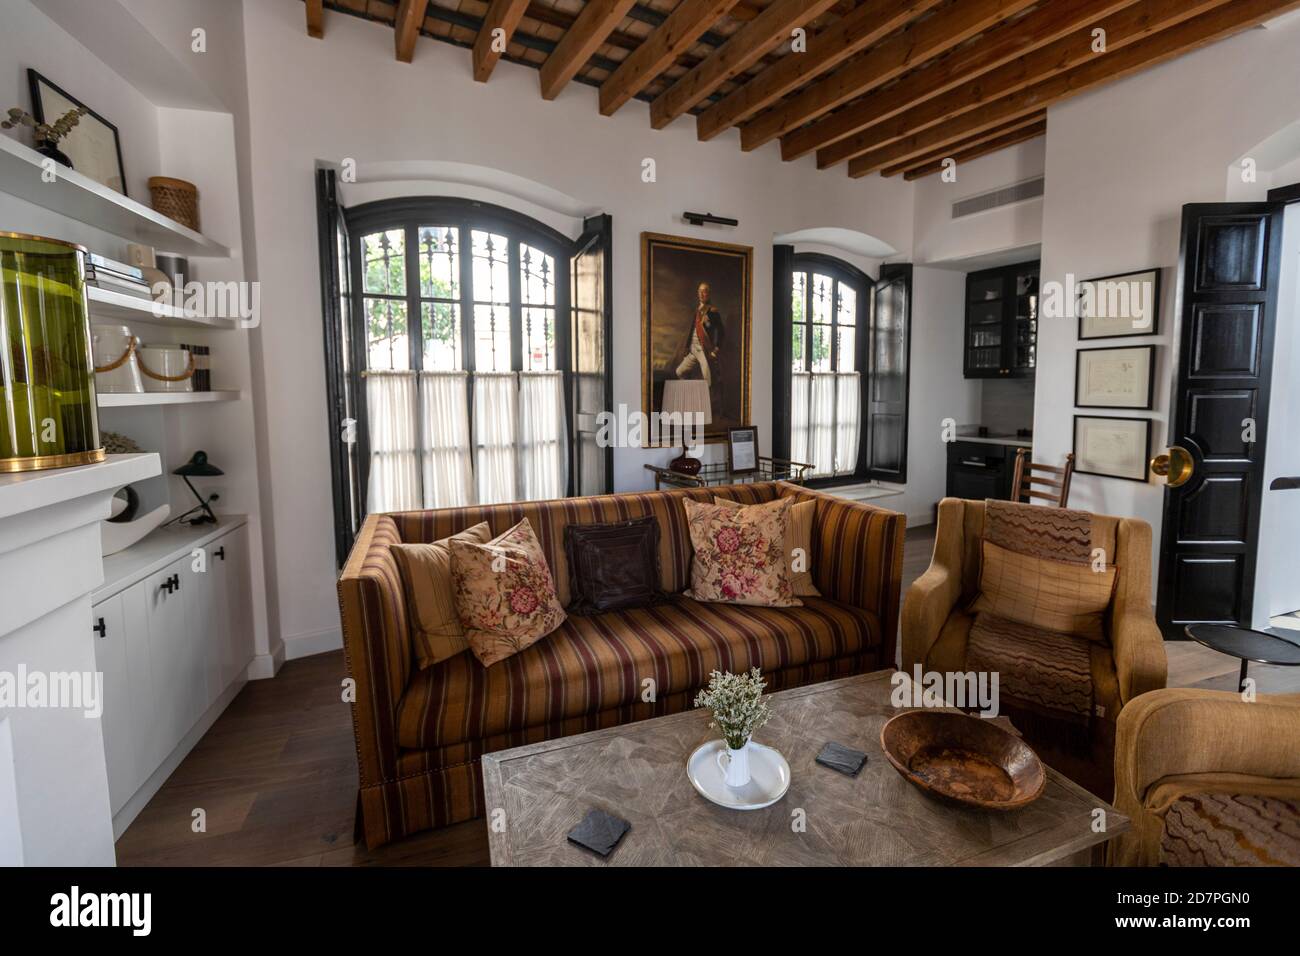 House interior of a boutique hotel in Vejer de la Frontera, Cadiz province, Andalusia, Spain Stock Photo